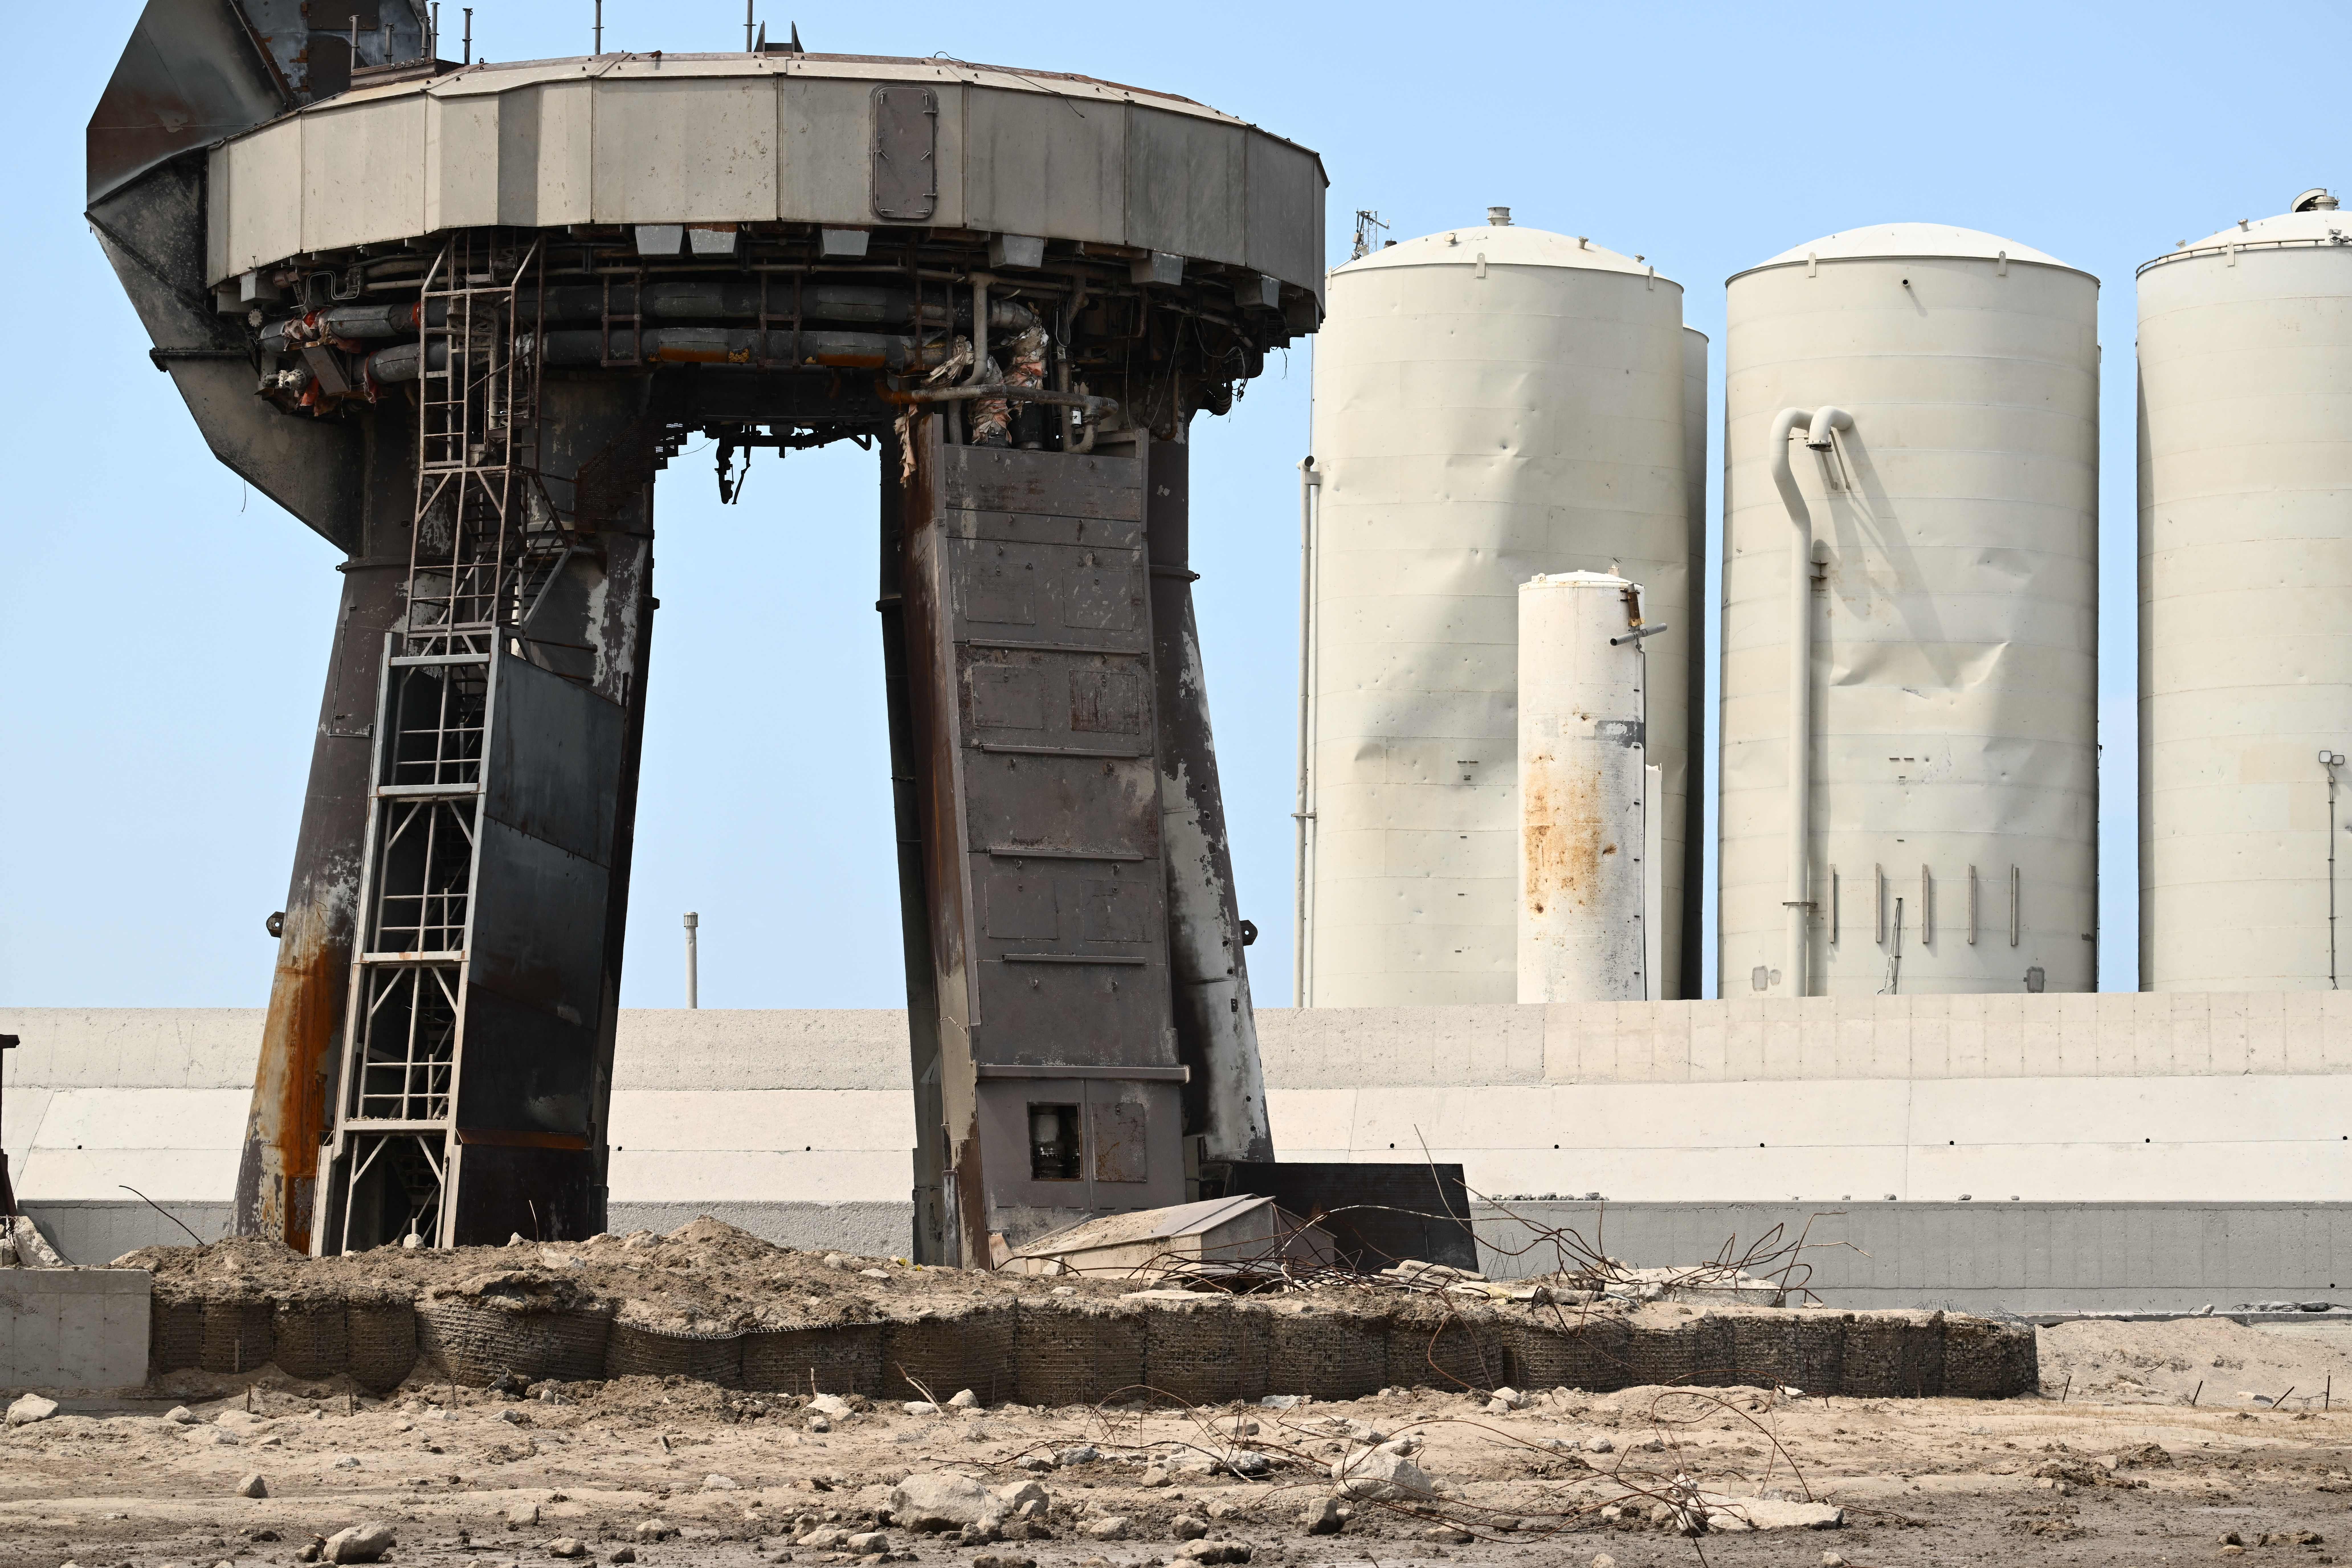 Escombros que rodean la plataforma de lanzamiento de Starship en Boca Chica, Texas.